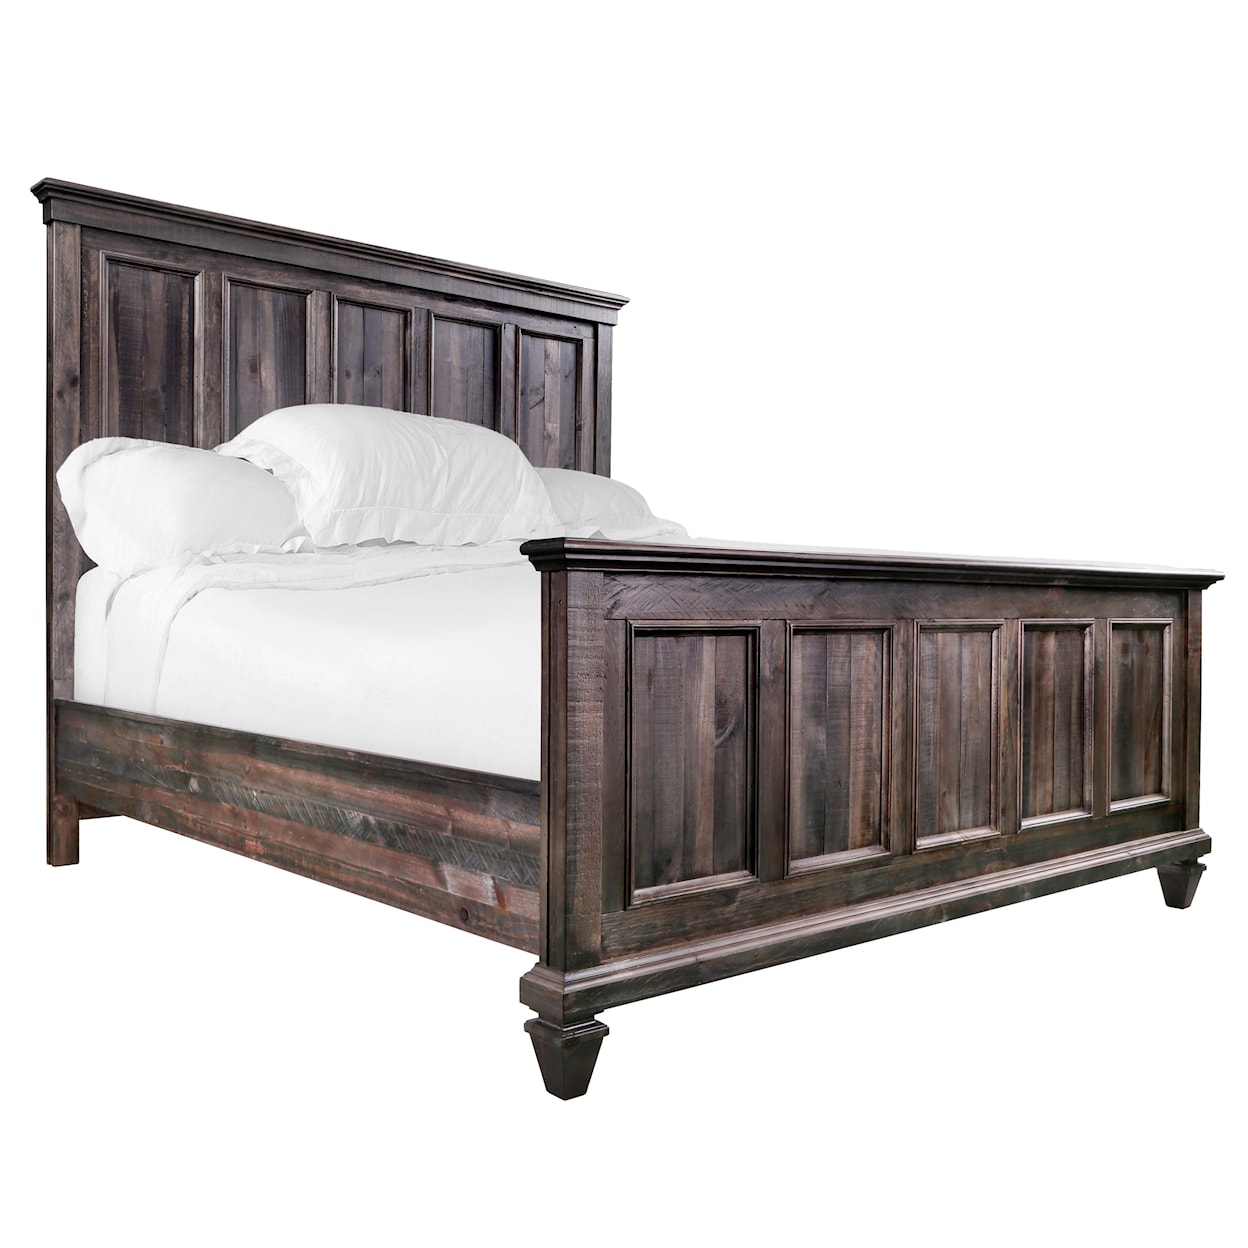 Magnussen Home Calistoga Bedroom Queen Panel Bed